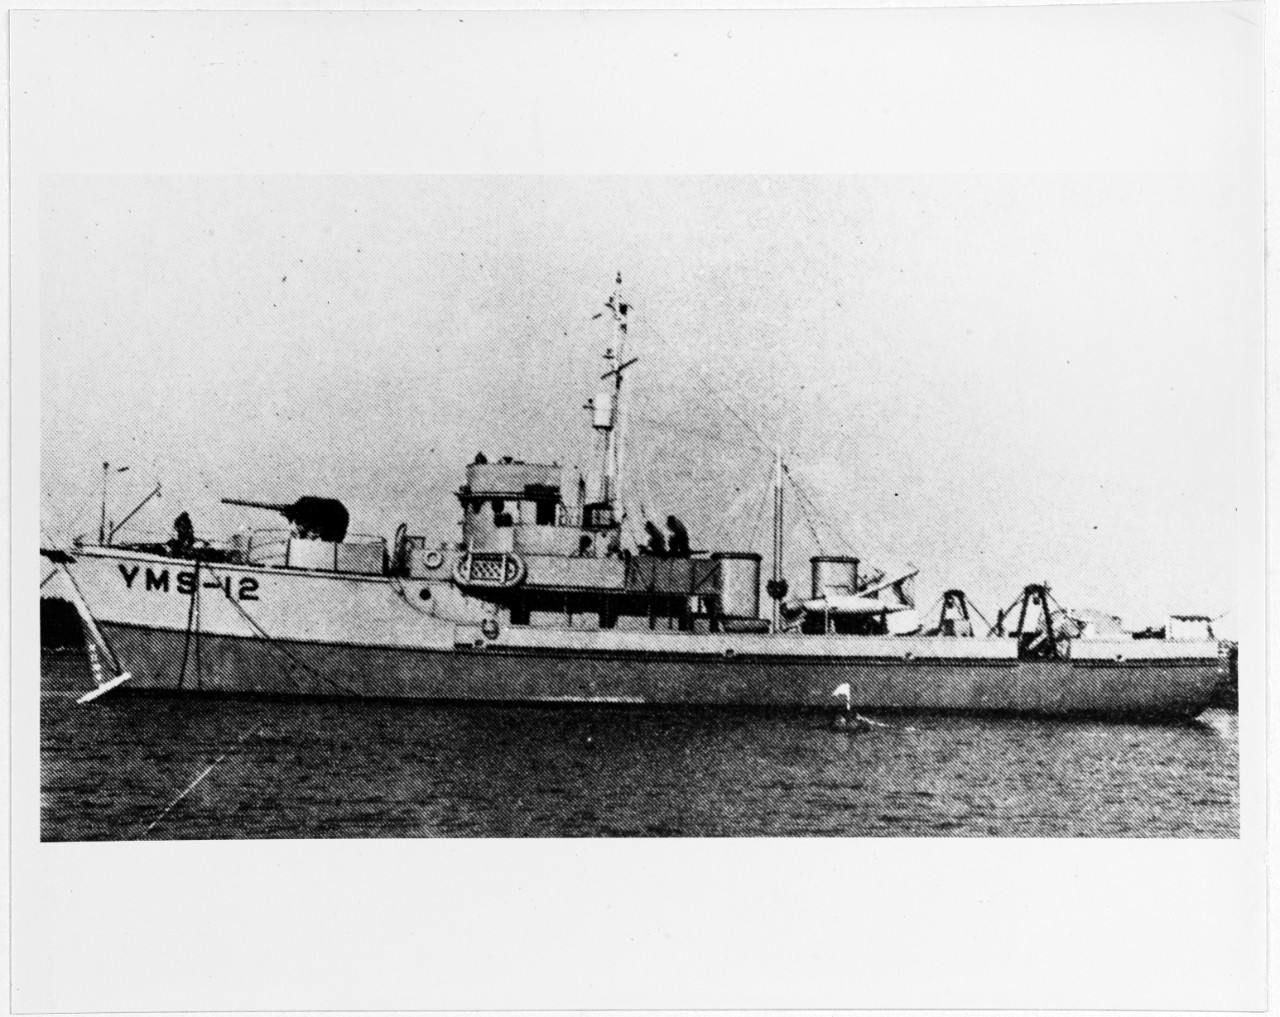 USS YMS-12